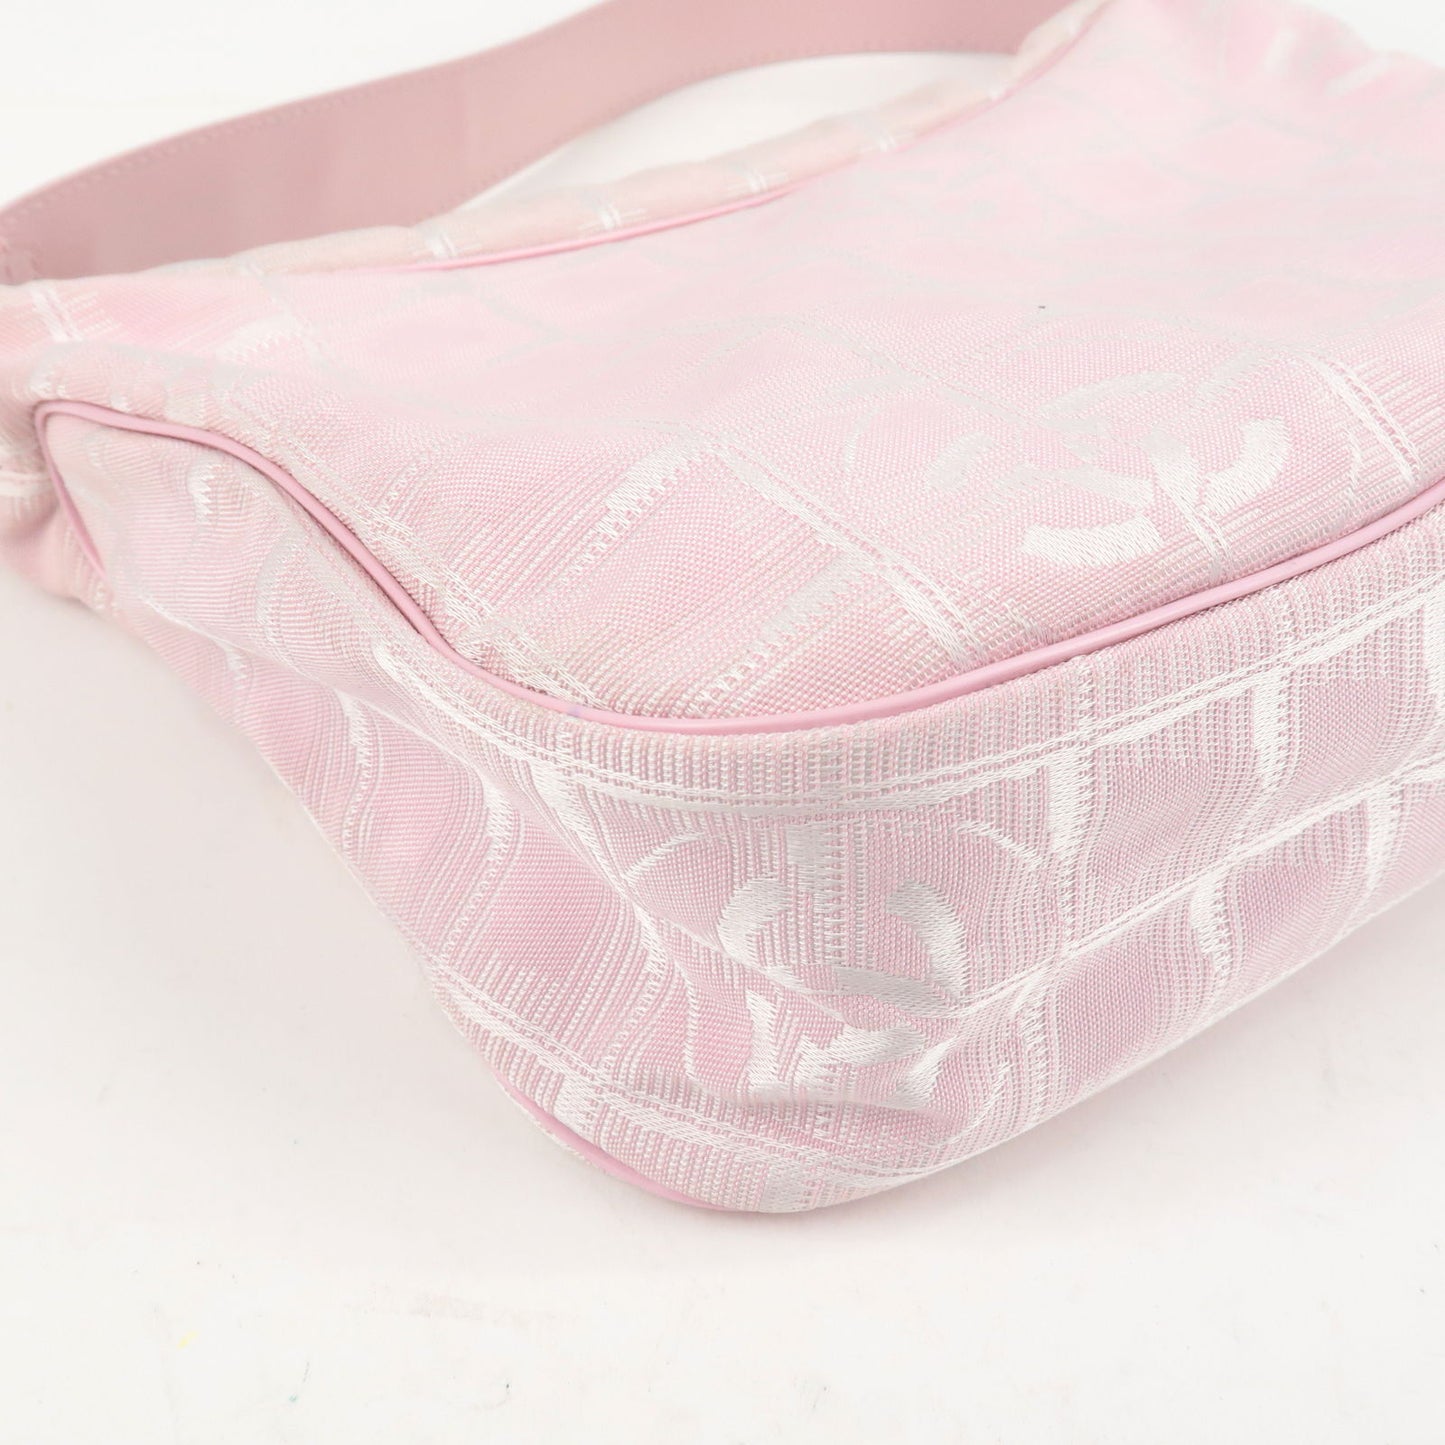 CHANEL Travel Line Nylon Jacquard Leather Shoulder Bag Pink A20516